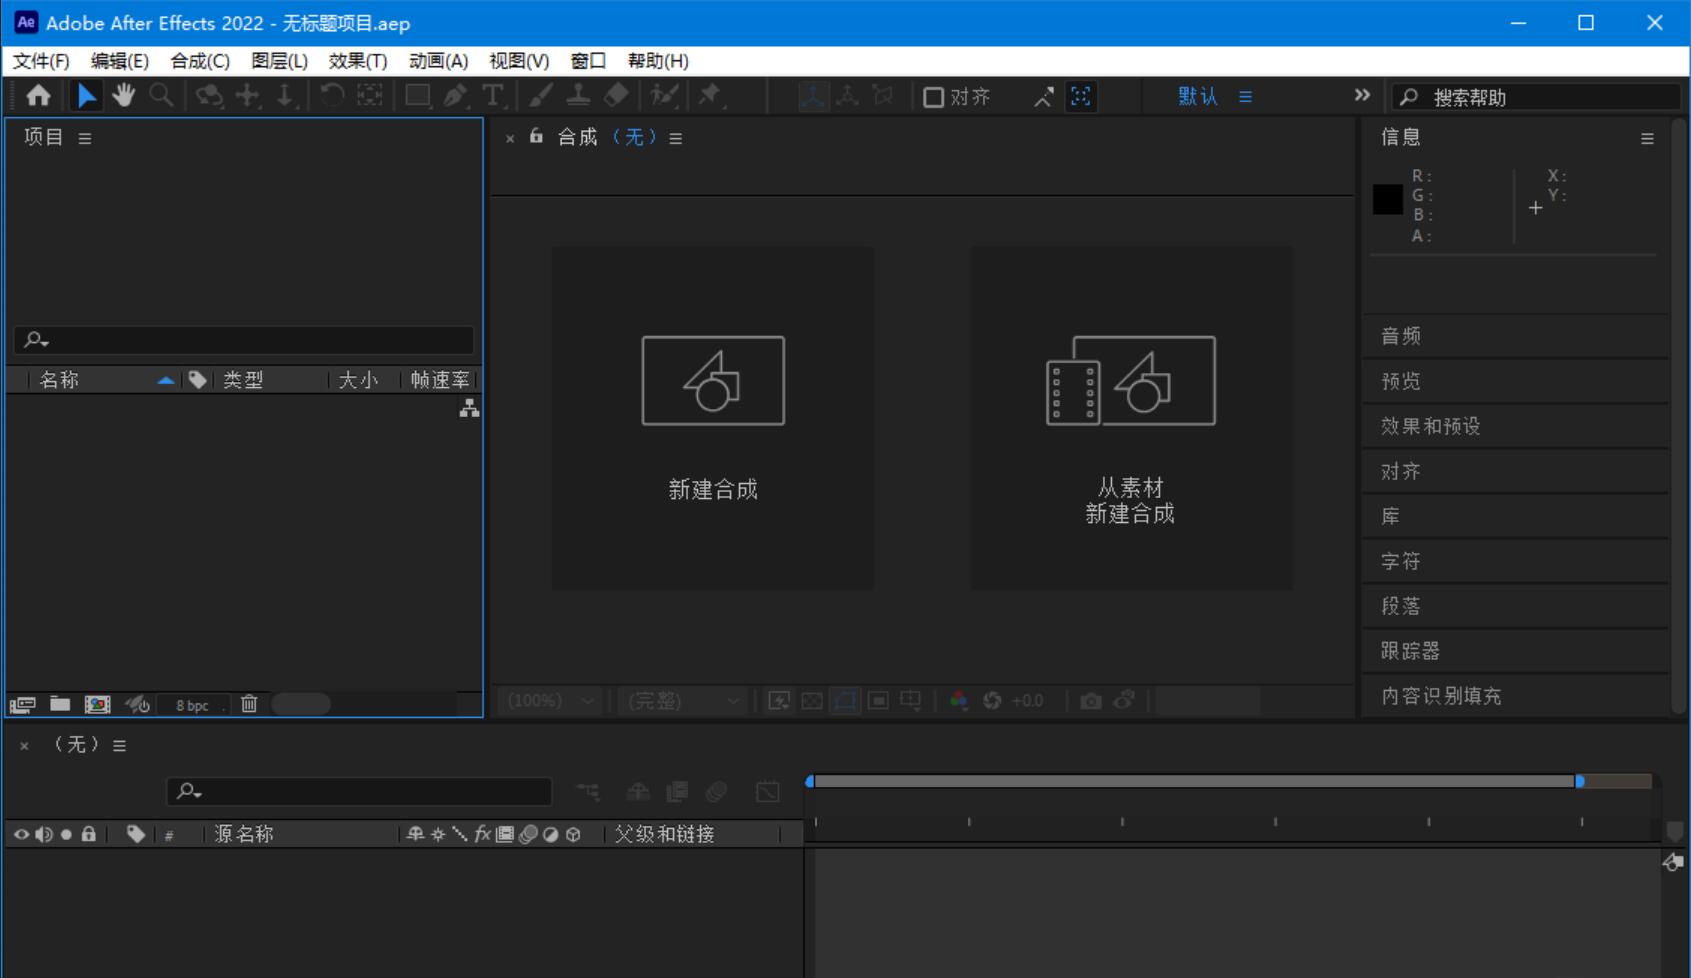 Adobe After Effects 2022 (22.3.0) Repack激活版-专业影视特效合成软件-木风软件站